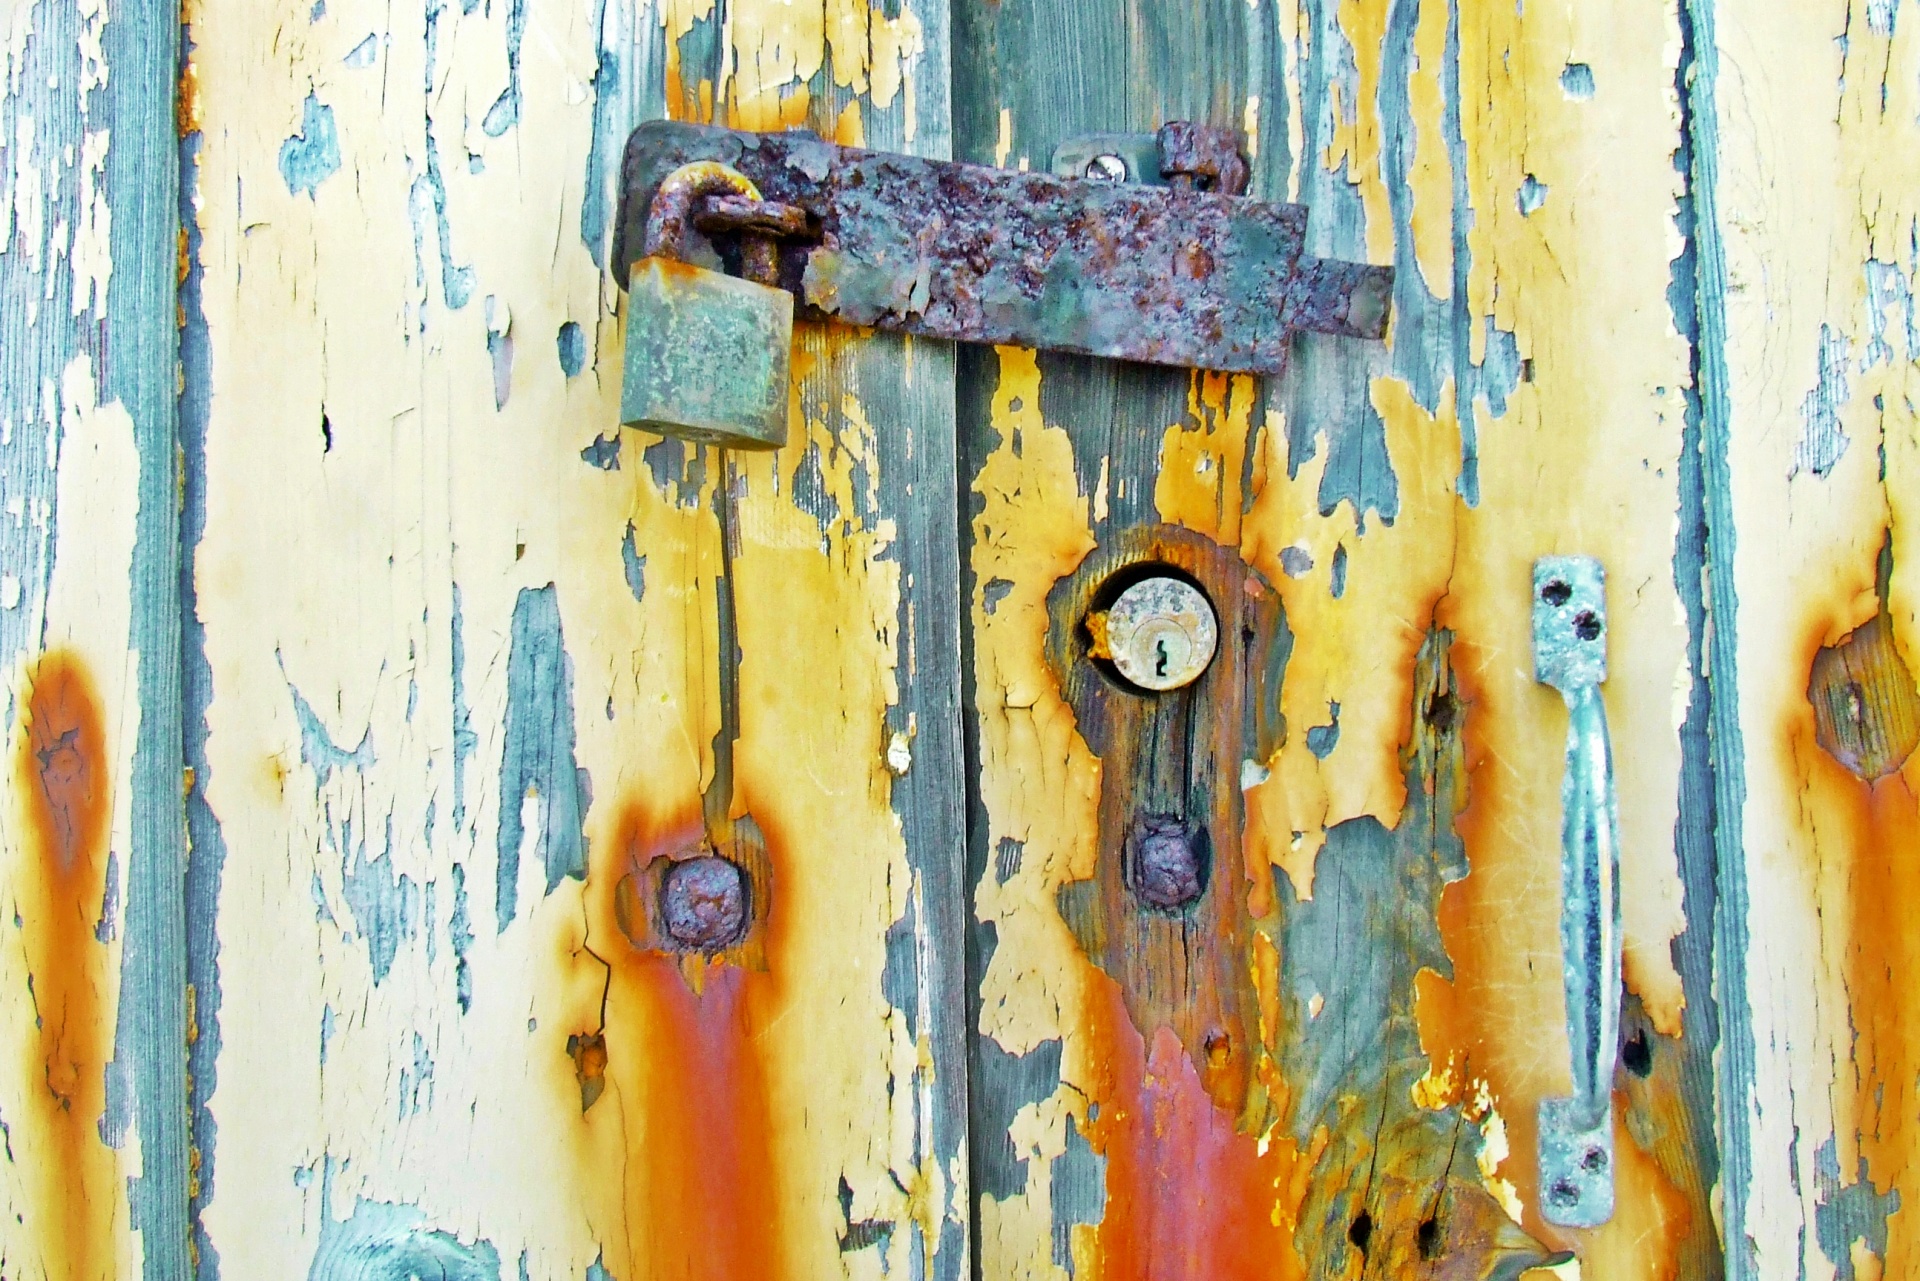 Rusty Lock & Old Doors